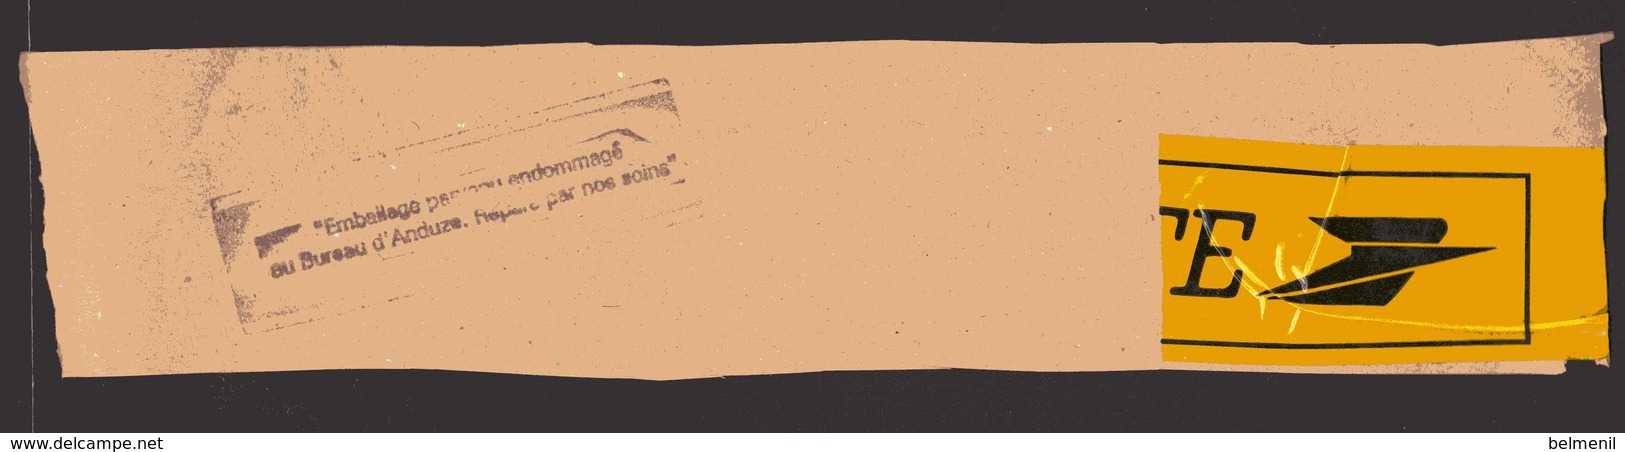 Cachet Linéaire Noir " Emballage Parvenu Endommagé Au Bureau D'Anduze " Réparé Par Nos Soins  ( Scotch Jaune La Poste ) - Lettere Accidentate